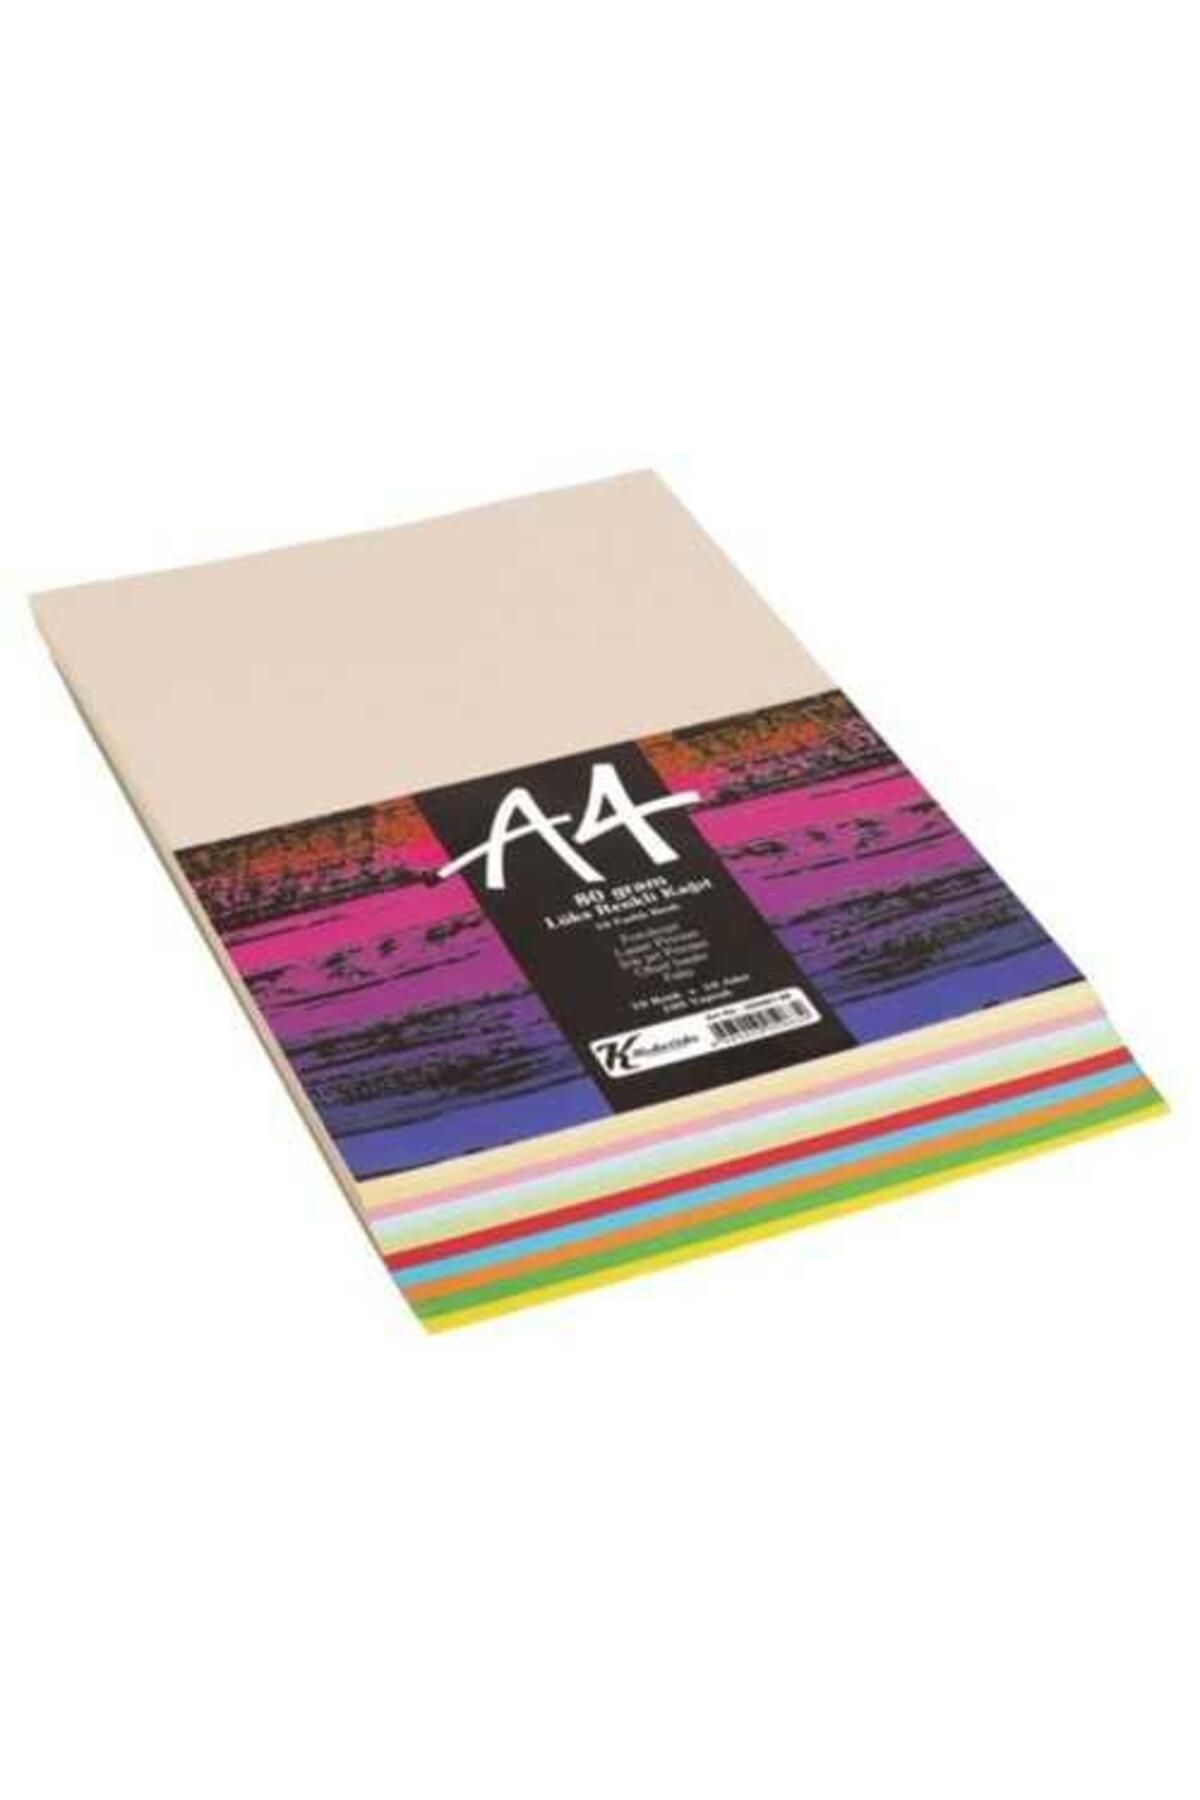 Keskin Color Keskin A4 100'Lü Renkli Karışık Fotokopi Kağıdı